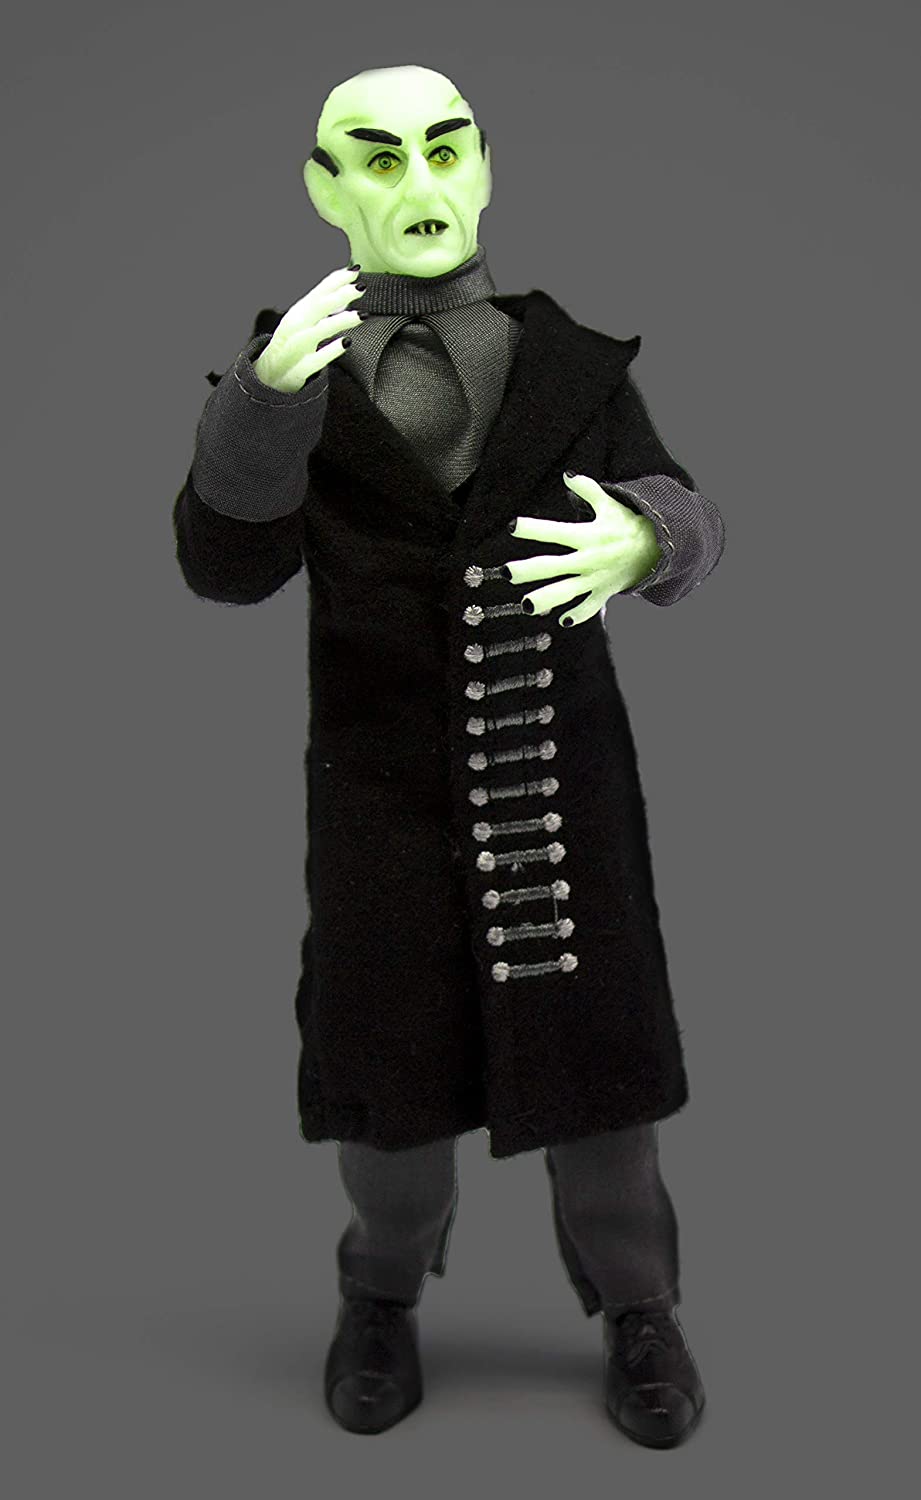 Nosferatu Count Orlok (Glow In The Dark) 8" Mego Figure